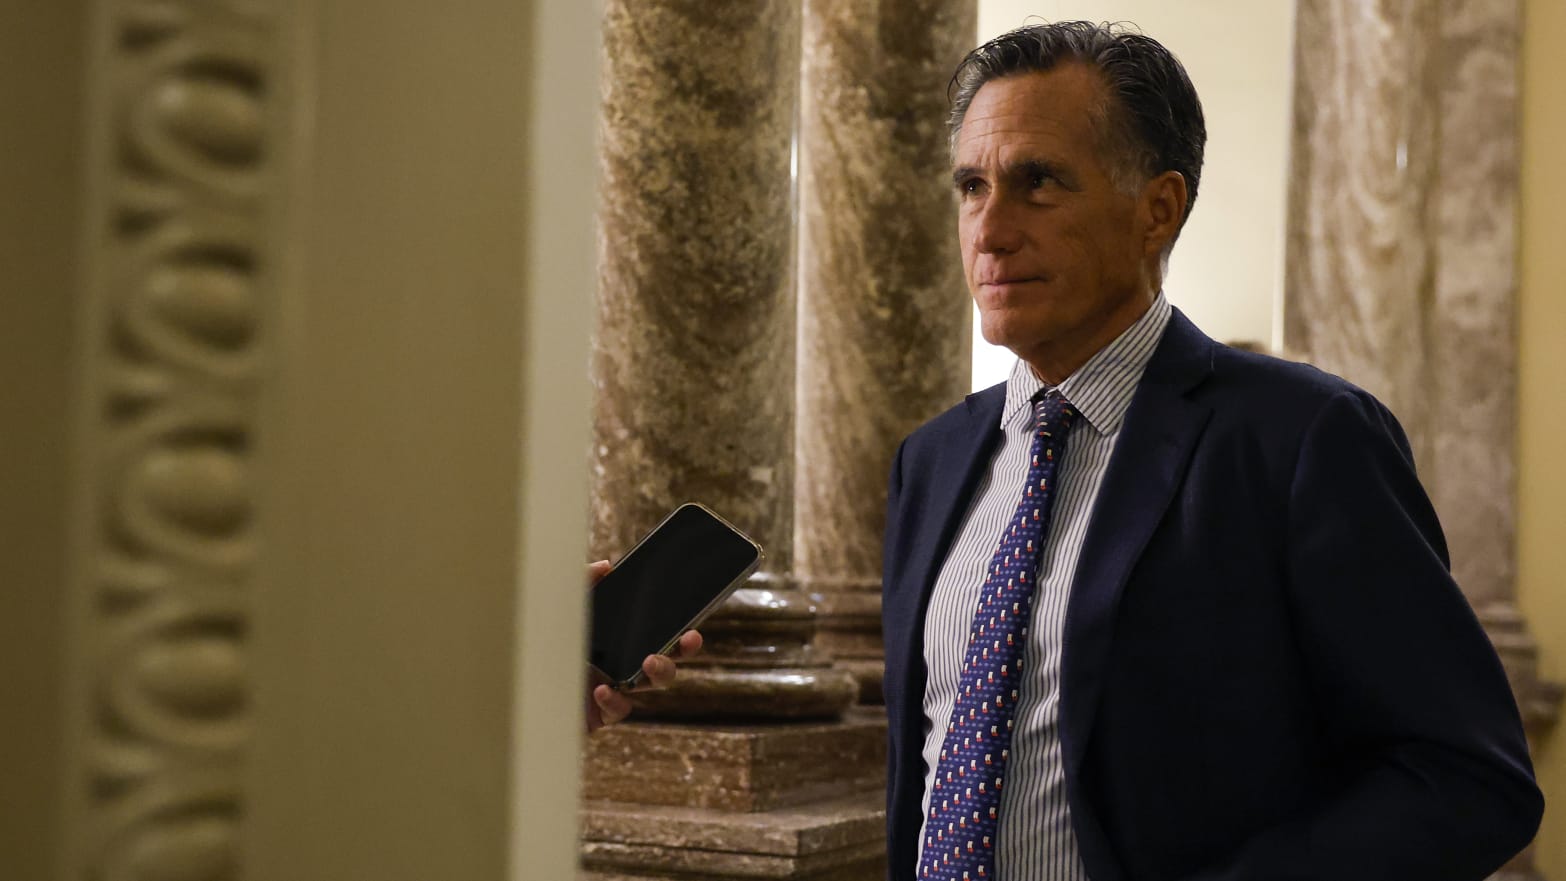 Mitt Romney speaks to a reporter in D.C.